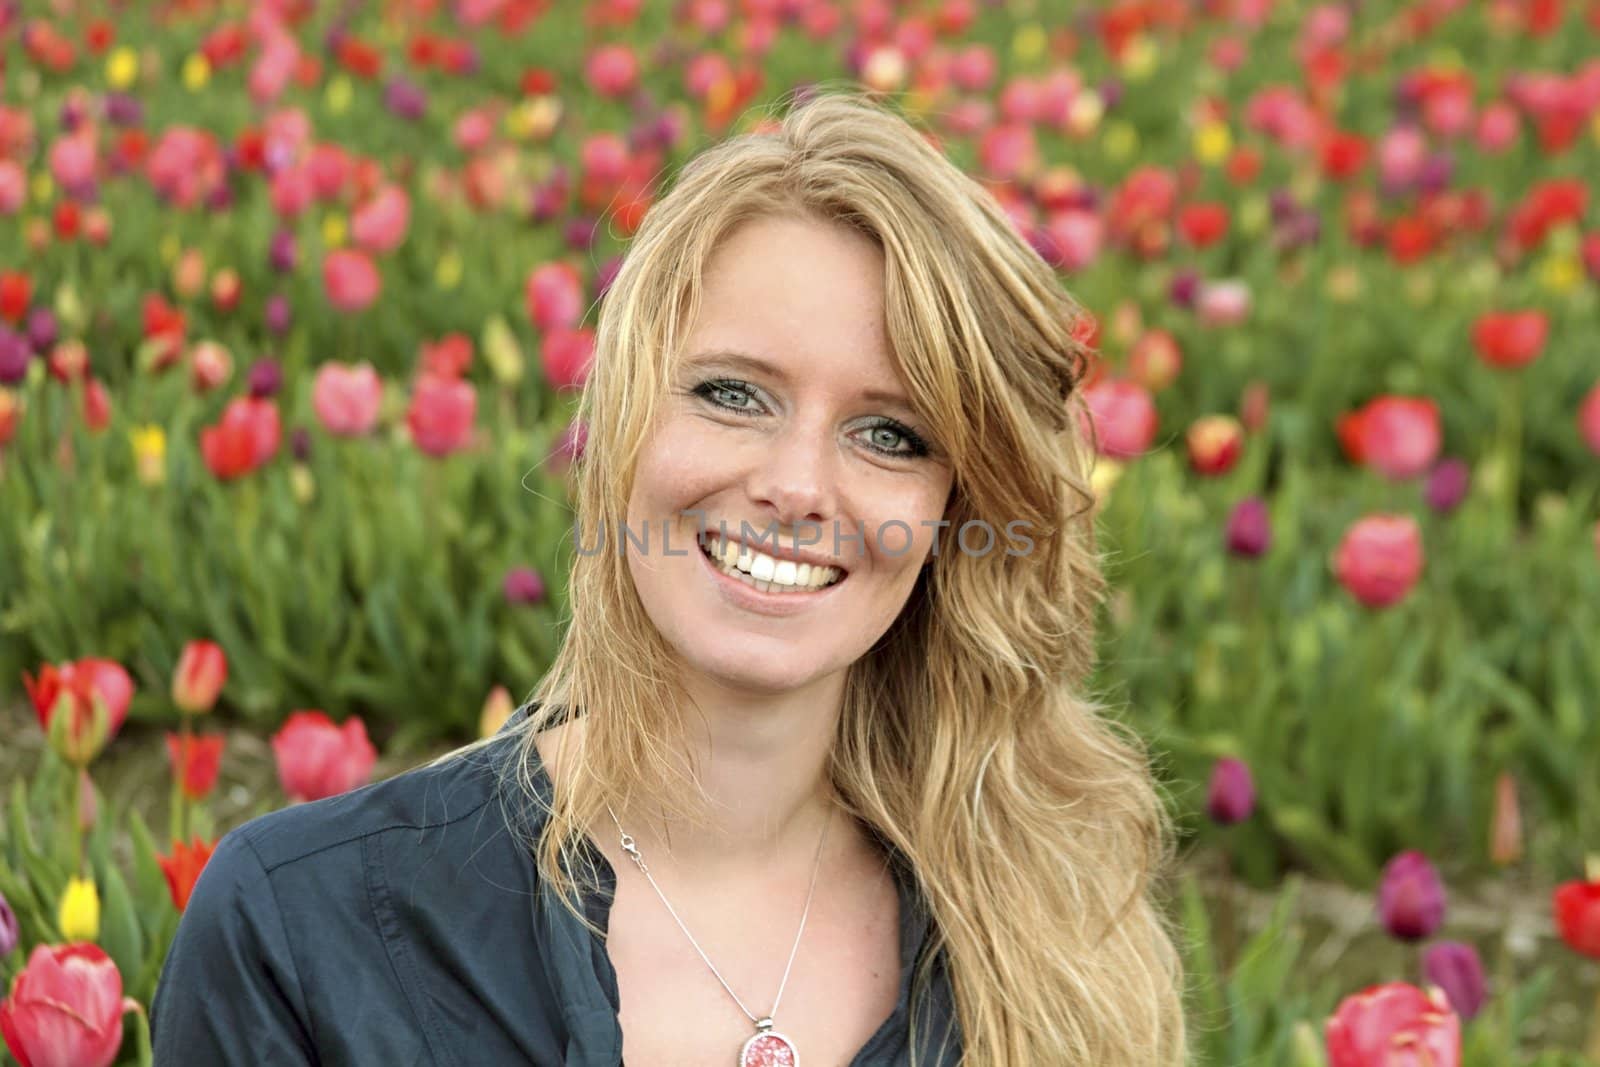 dutch woman between de flower fields in the Netherlands by devy